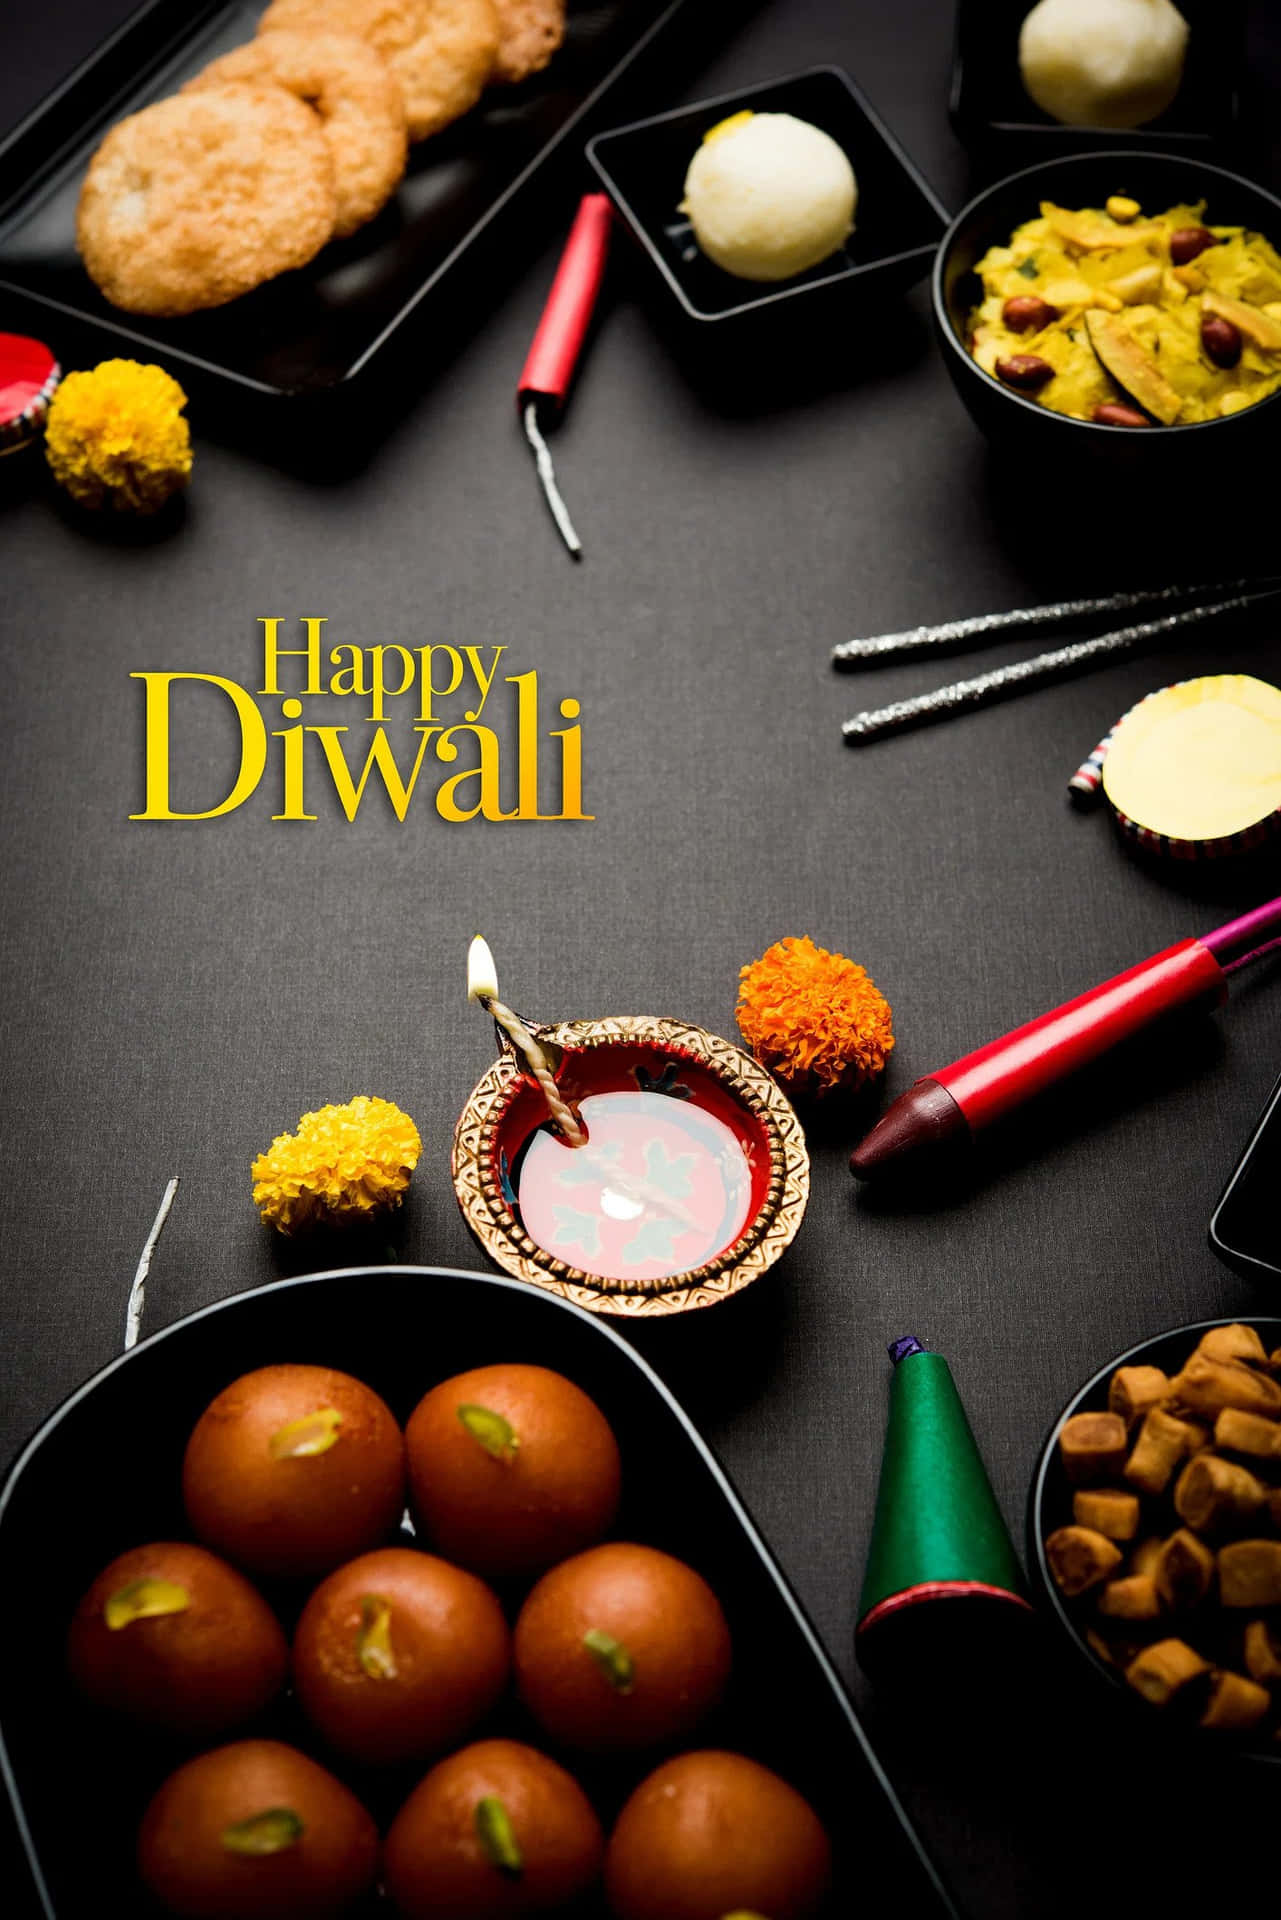 Desejandolhe Alegria E Felicidade Na Ocasião Festiva Do Diwali